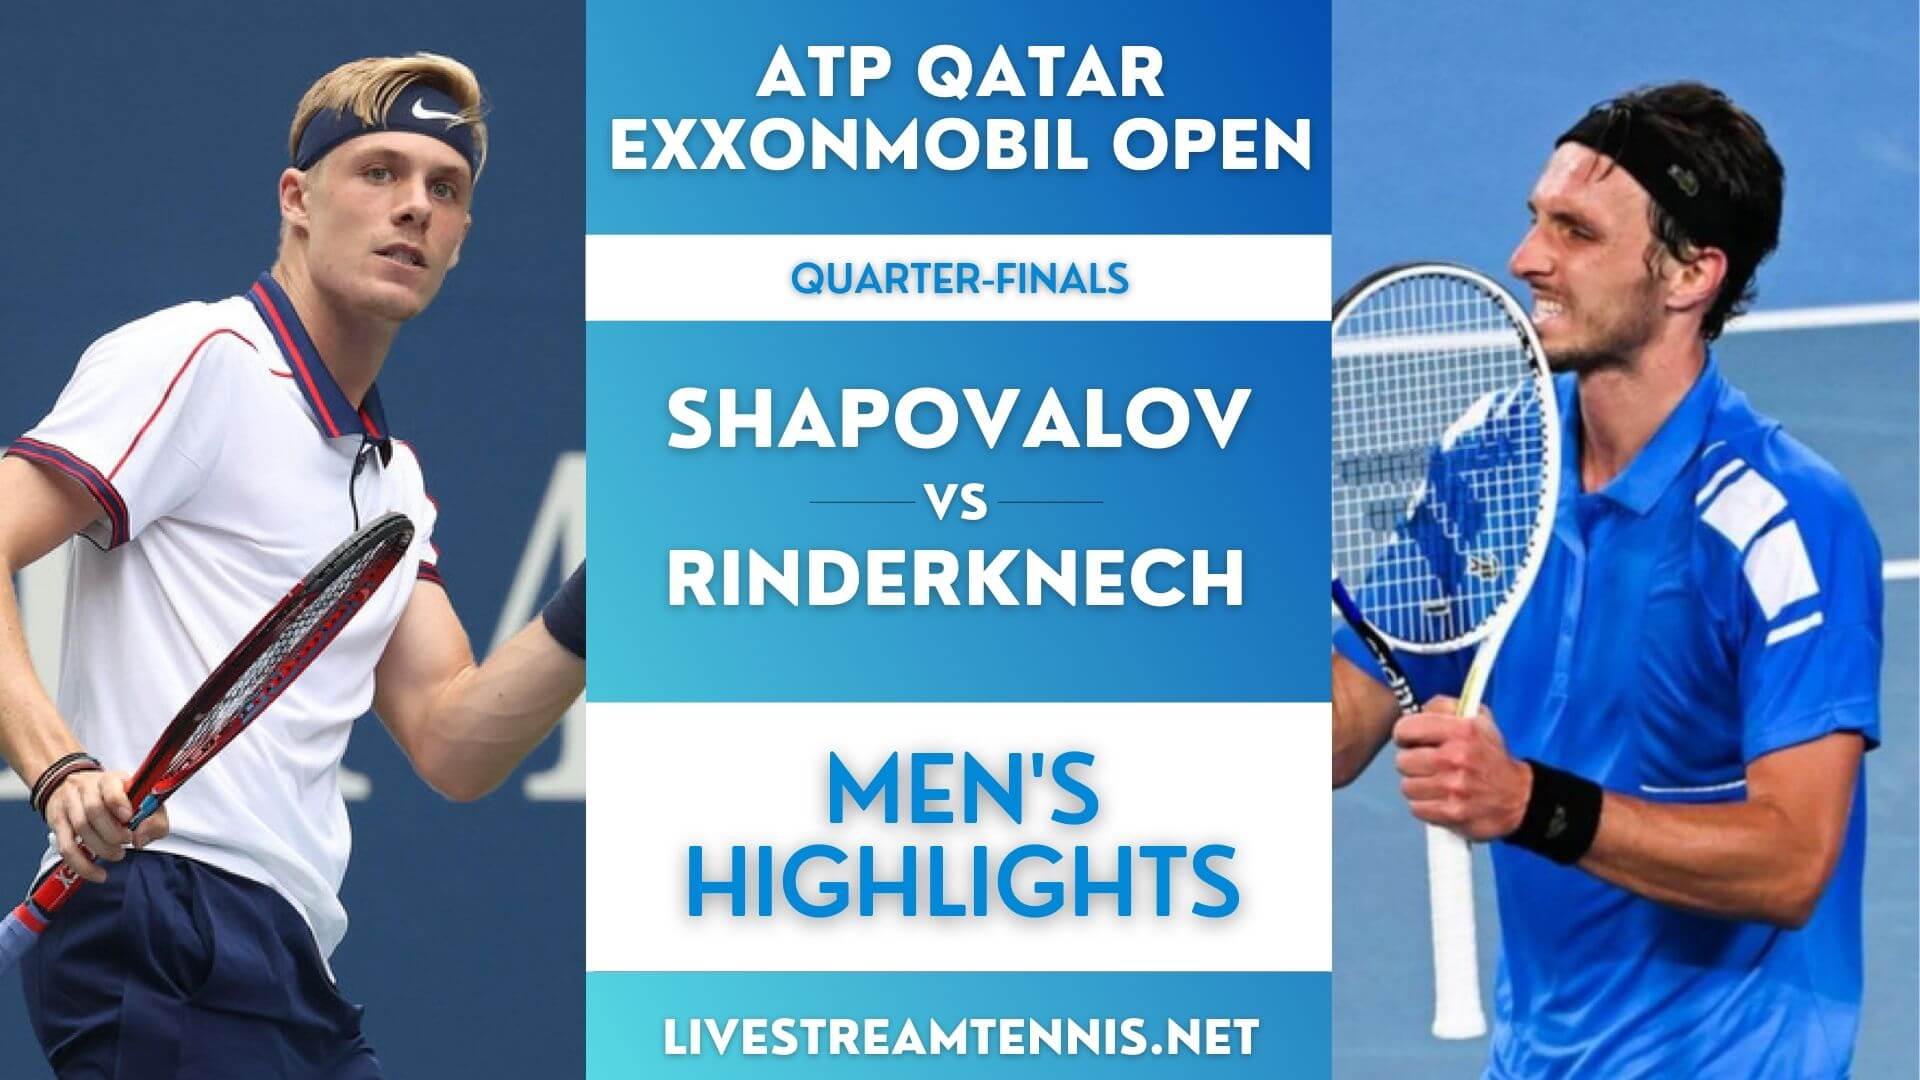 Qatar Open ATP Quarterfinal 4 Highlights 2022